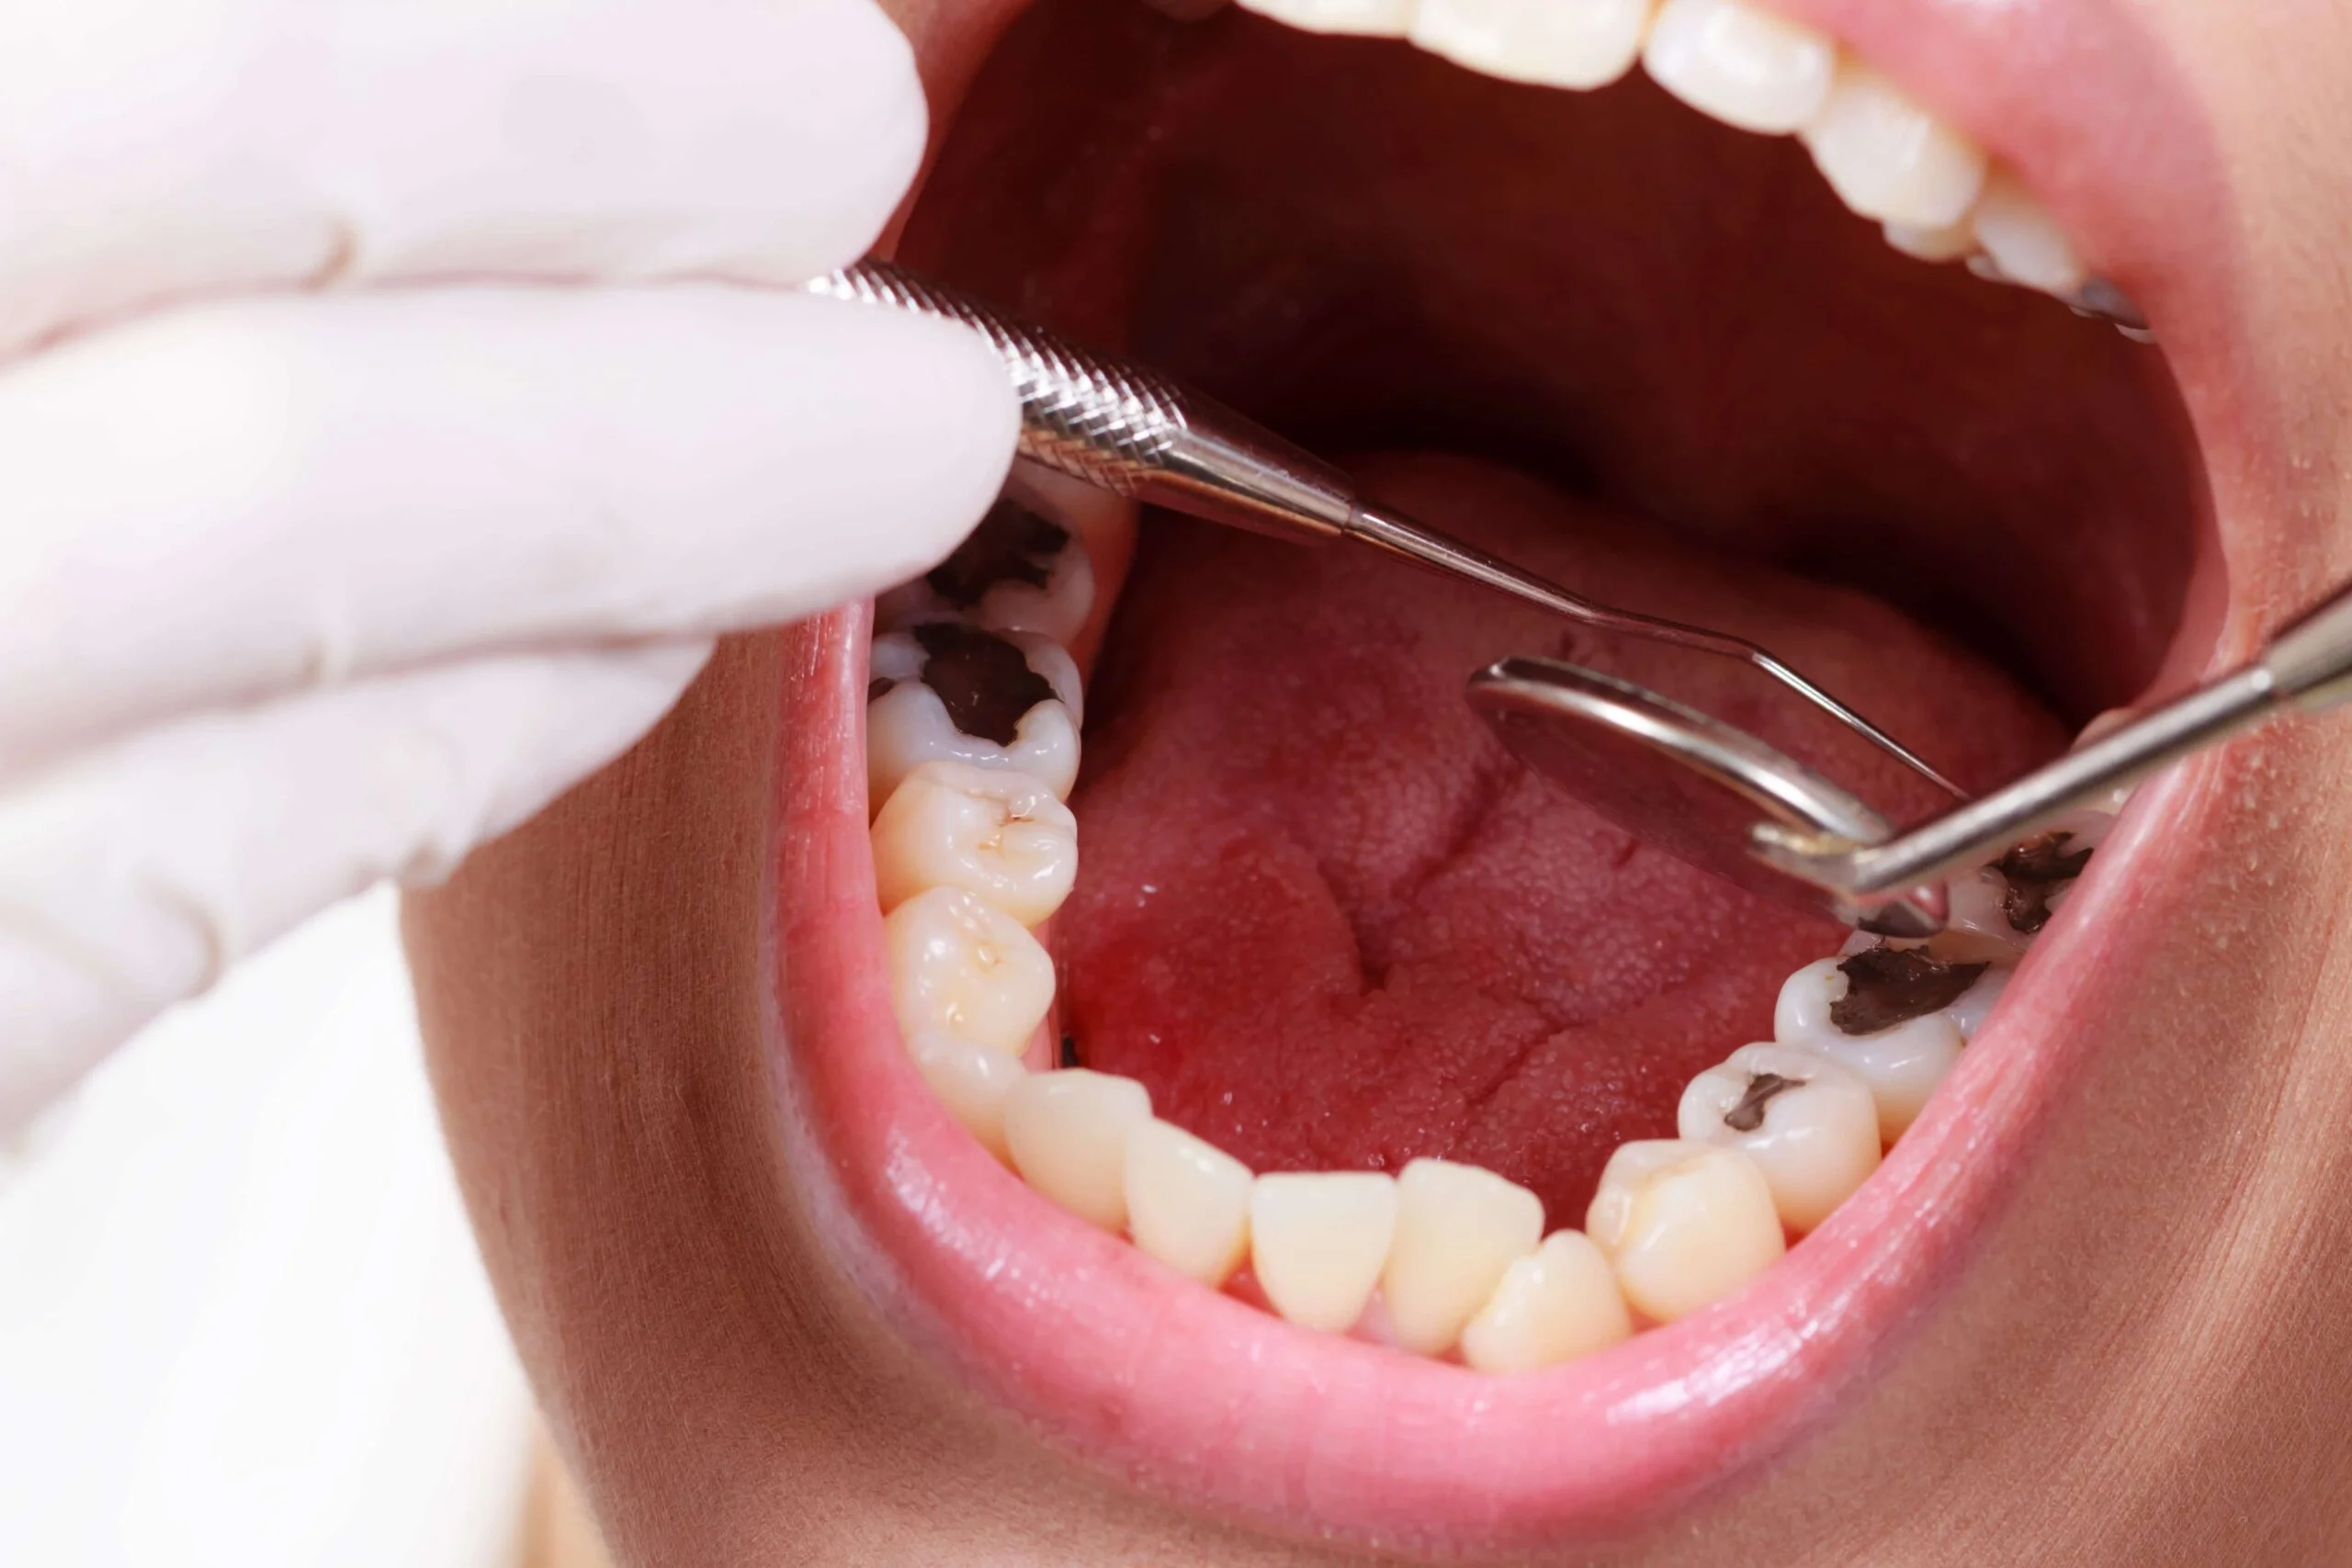 Cariile: Obiceiurile banale care iti distrug dantura + Ce boli risti daca NU tratezi dintii cariati